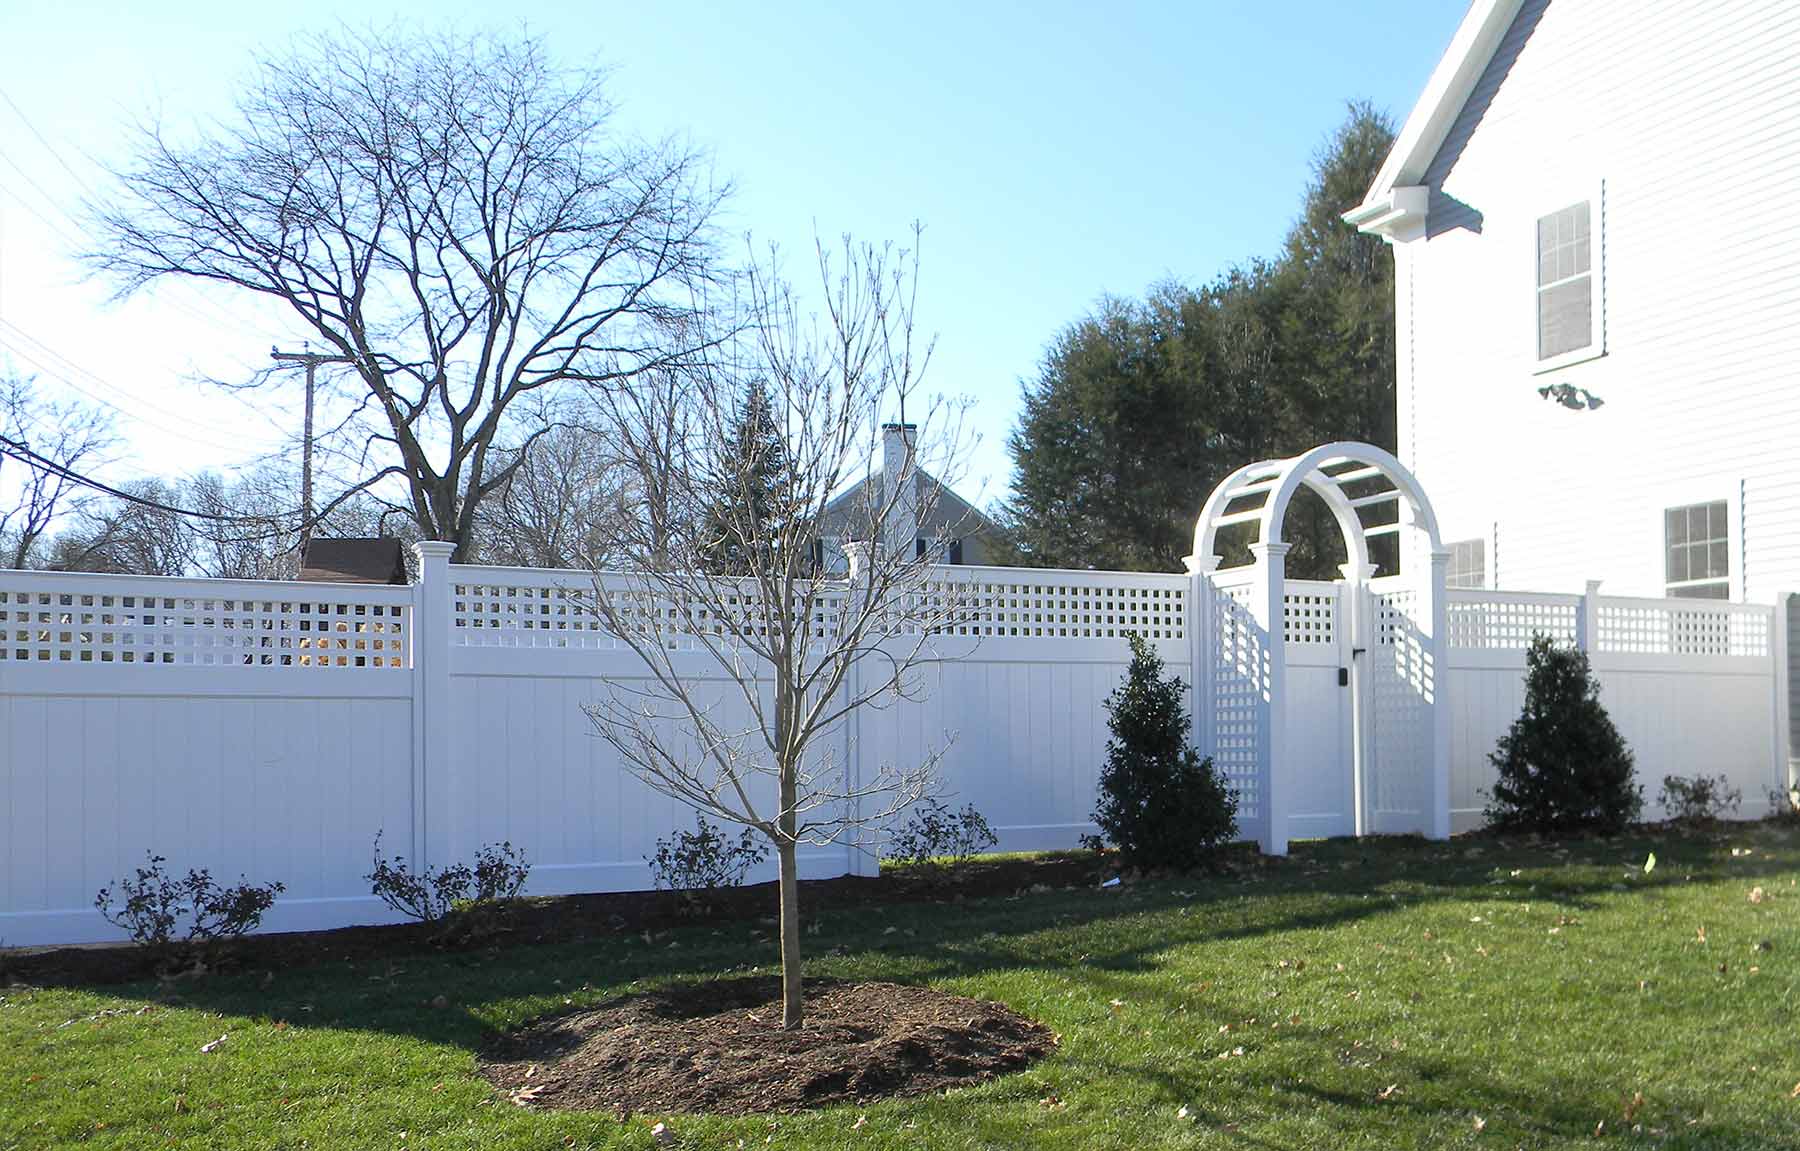 Fence Installation in Wrentham, Massachusetts - Bottom 4